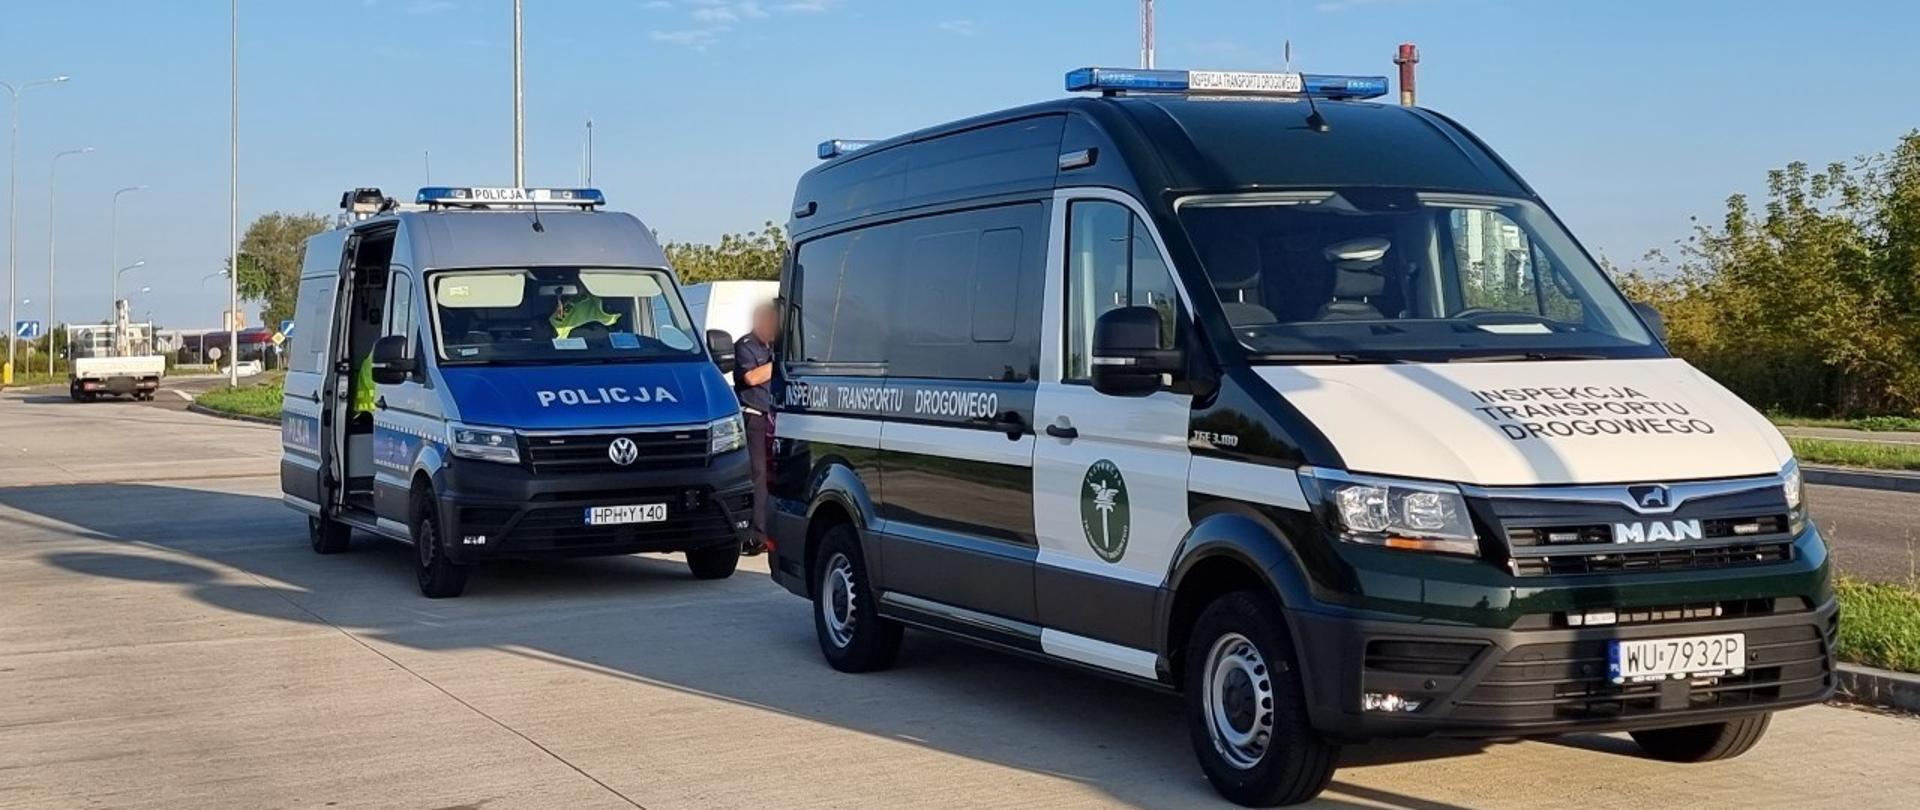 Miejsce zatrzymania do kontroli nietrzeźwego kierowcy samochodu dostawczego przez patrol Inspekcji Transportu Drogowego. Nietrzeźwy kierujący został przekazany do dalszych czynności funkcjonariuszom Komendy Miejskiej Policji w Radomiu.
